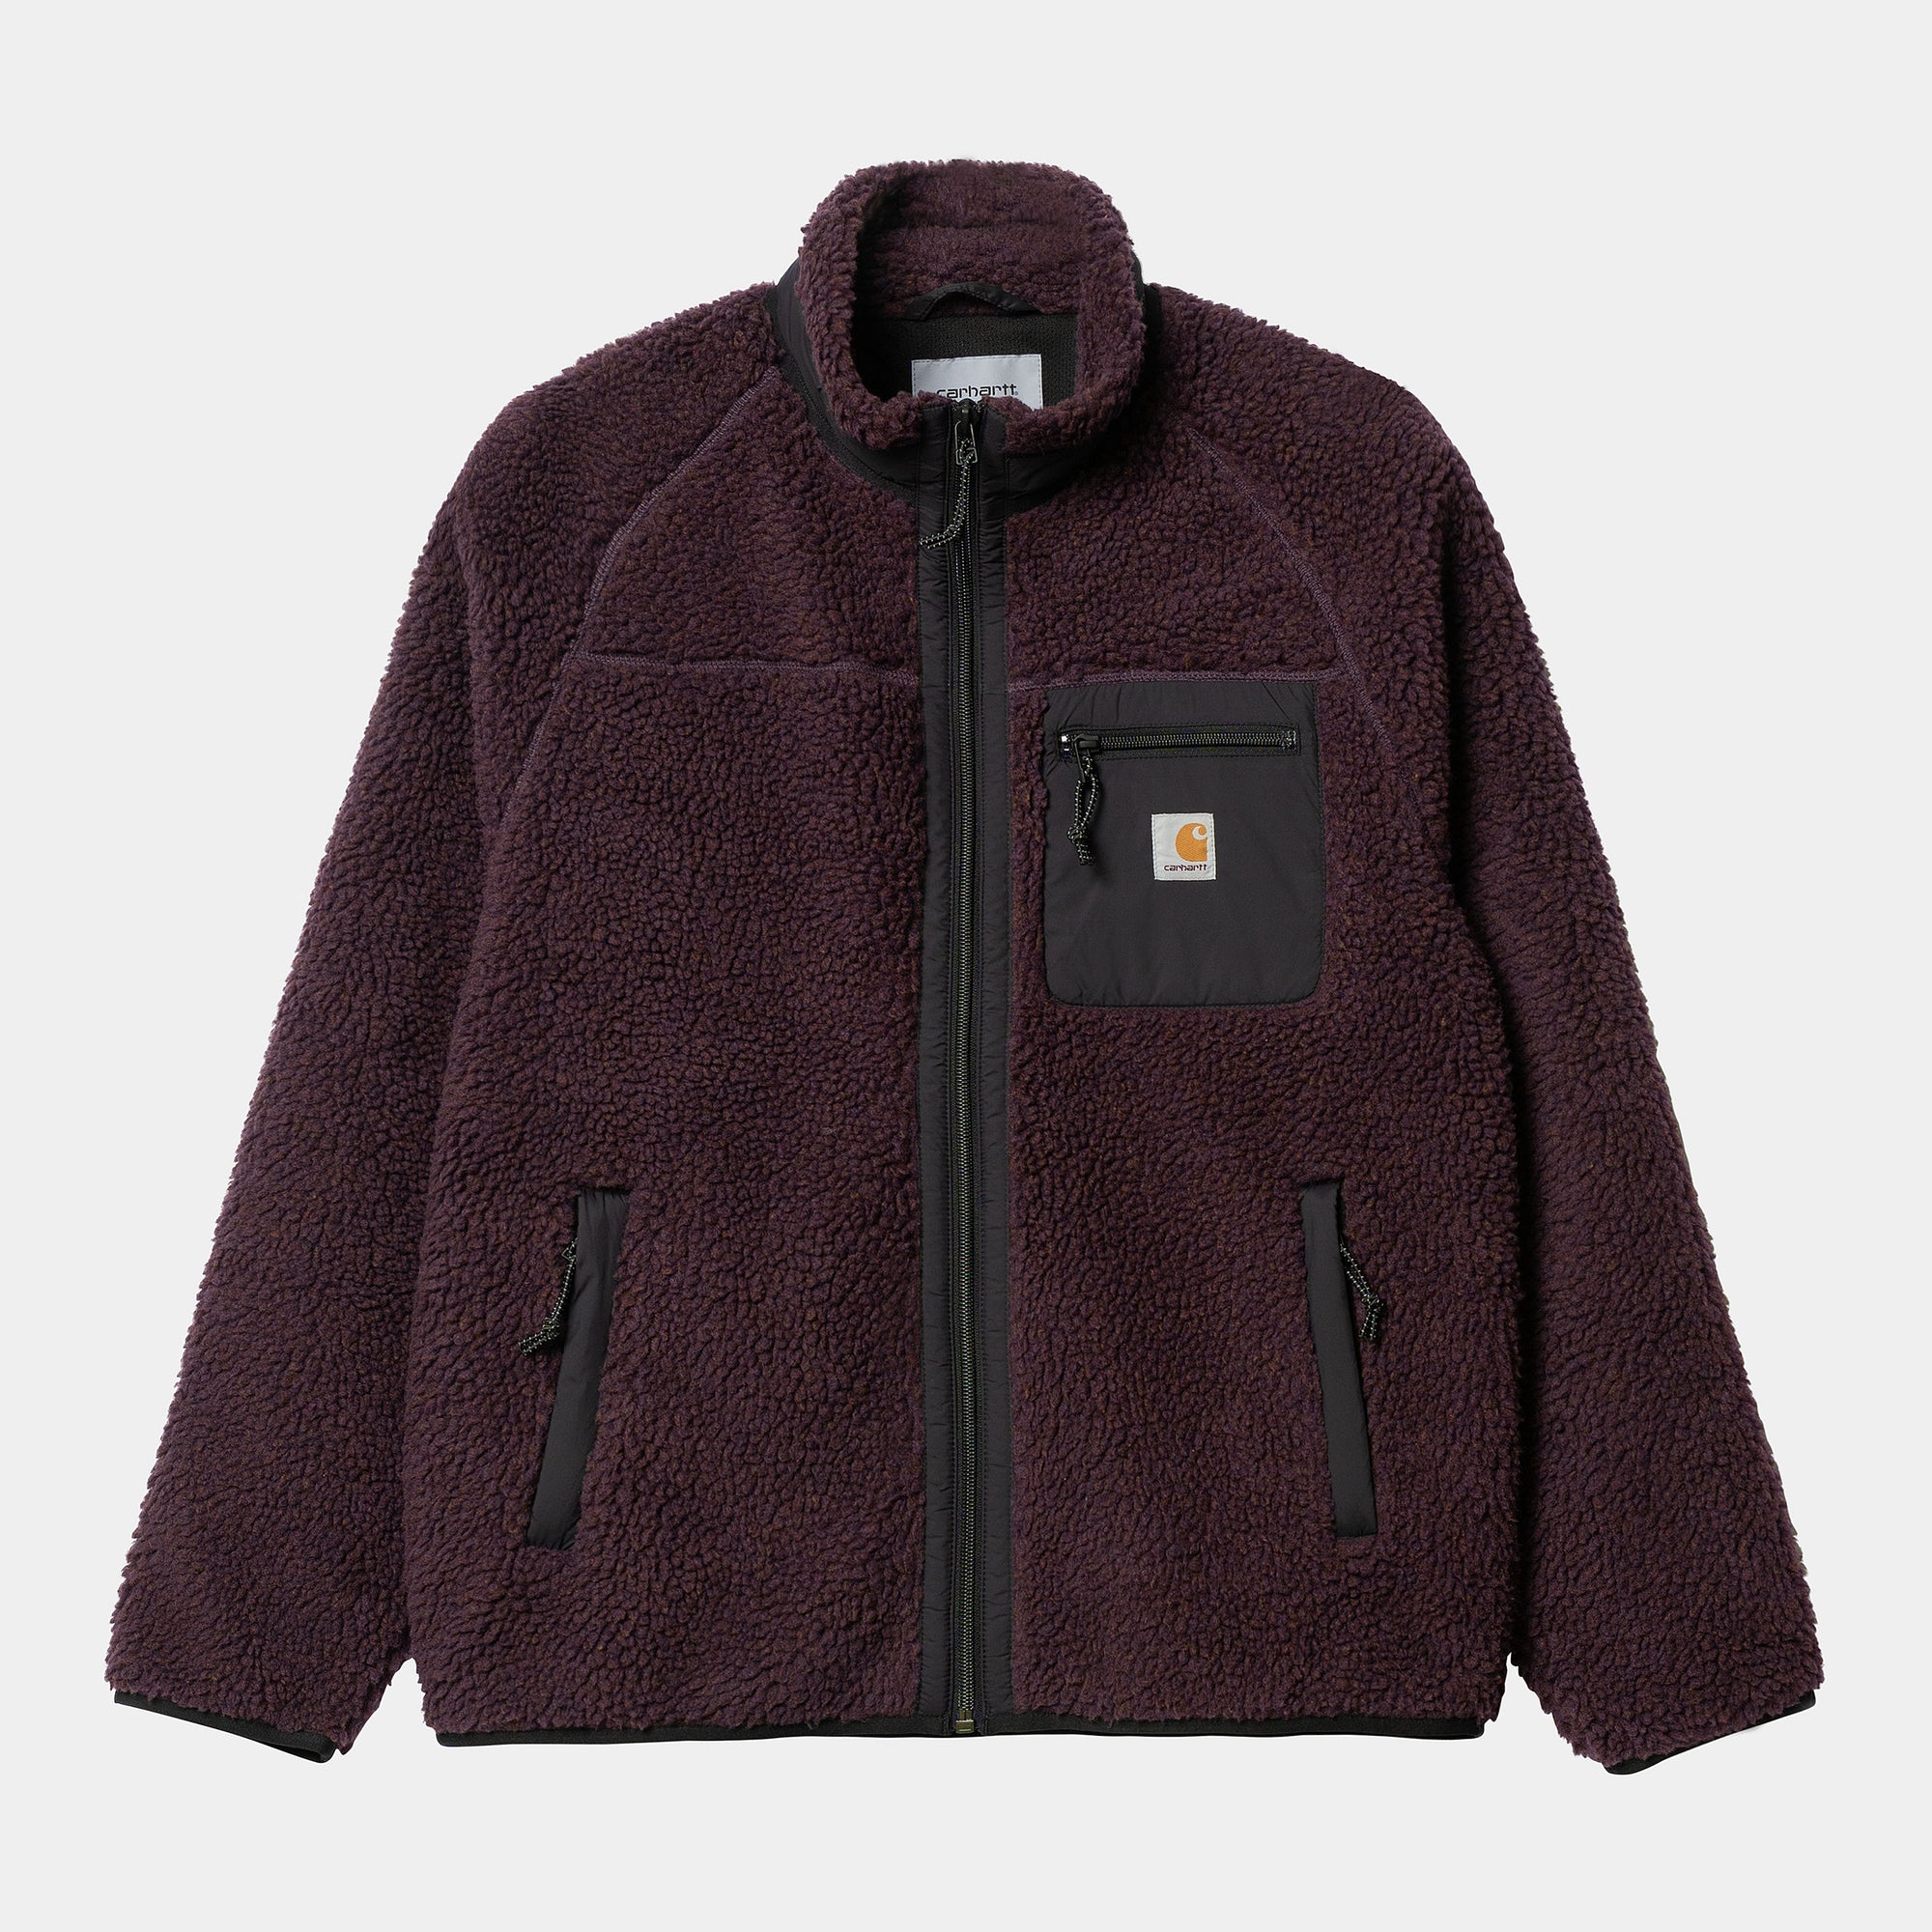 Carhartt WIP - Prentis Liner Fleece Jacket - Dark Plum / Black